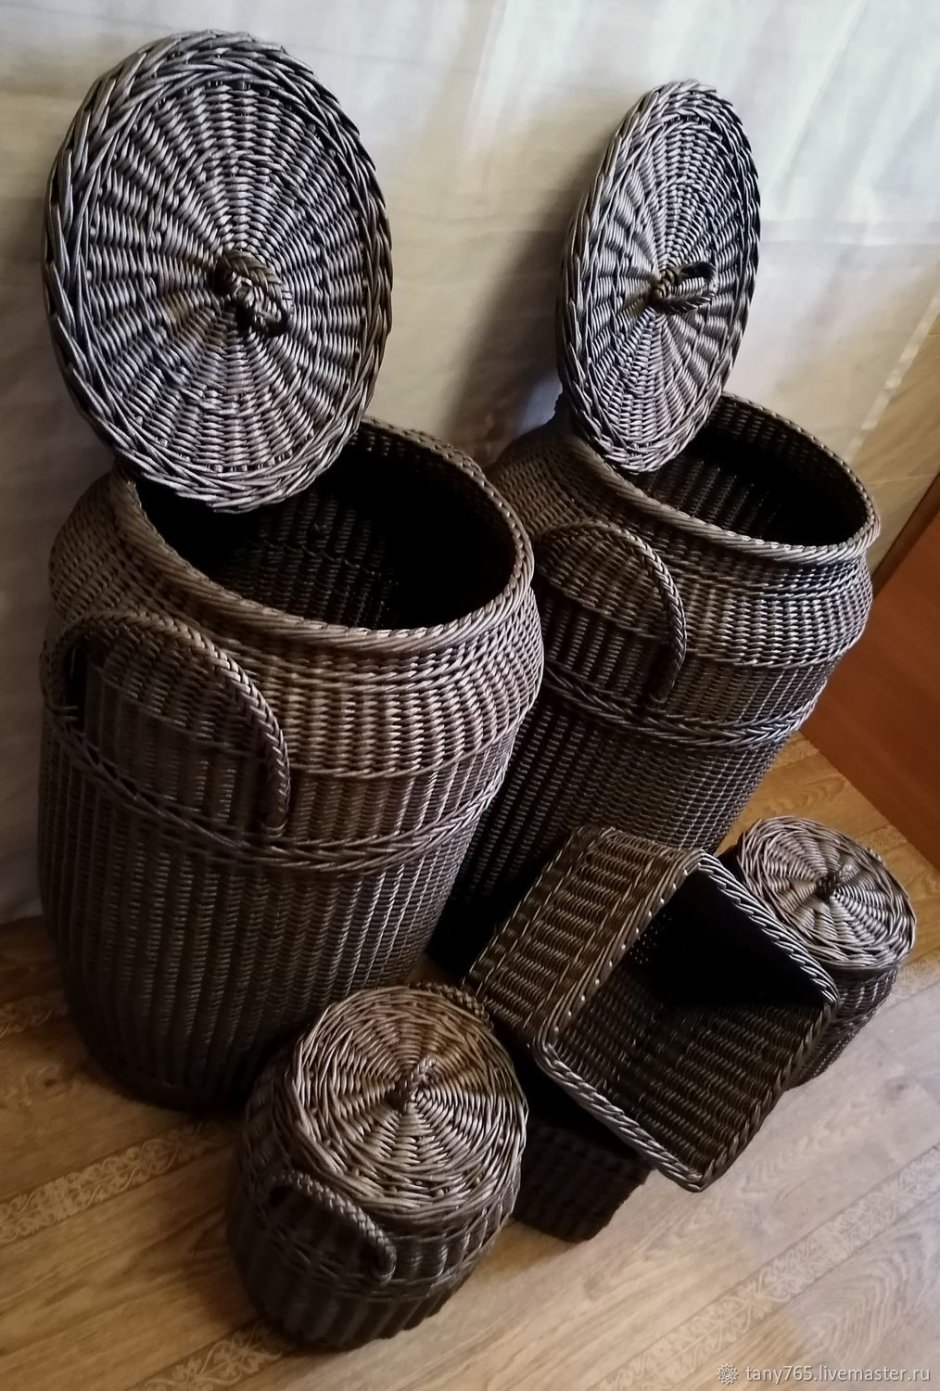 Плетеные корзины в интерьере